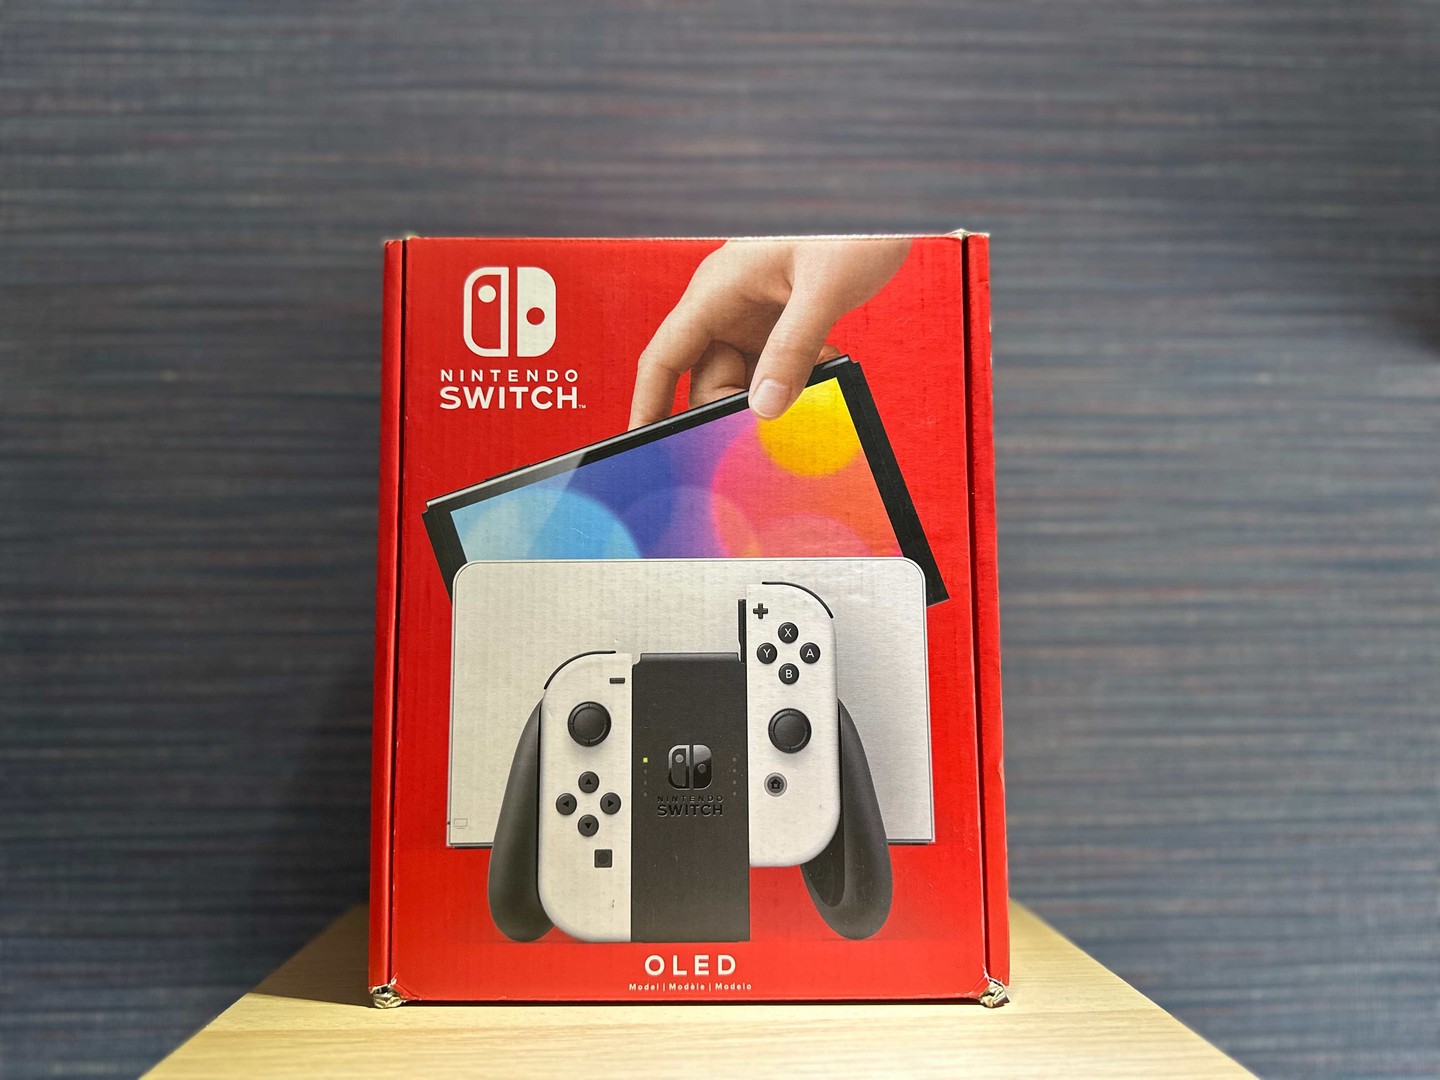 consolas y videojuegos - Vendo Nintendo Switch OLED Blanco Nuevos Sellados , Garantía , RD$ 19,800 NEG